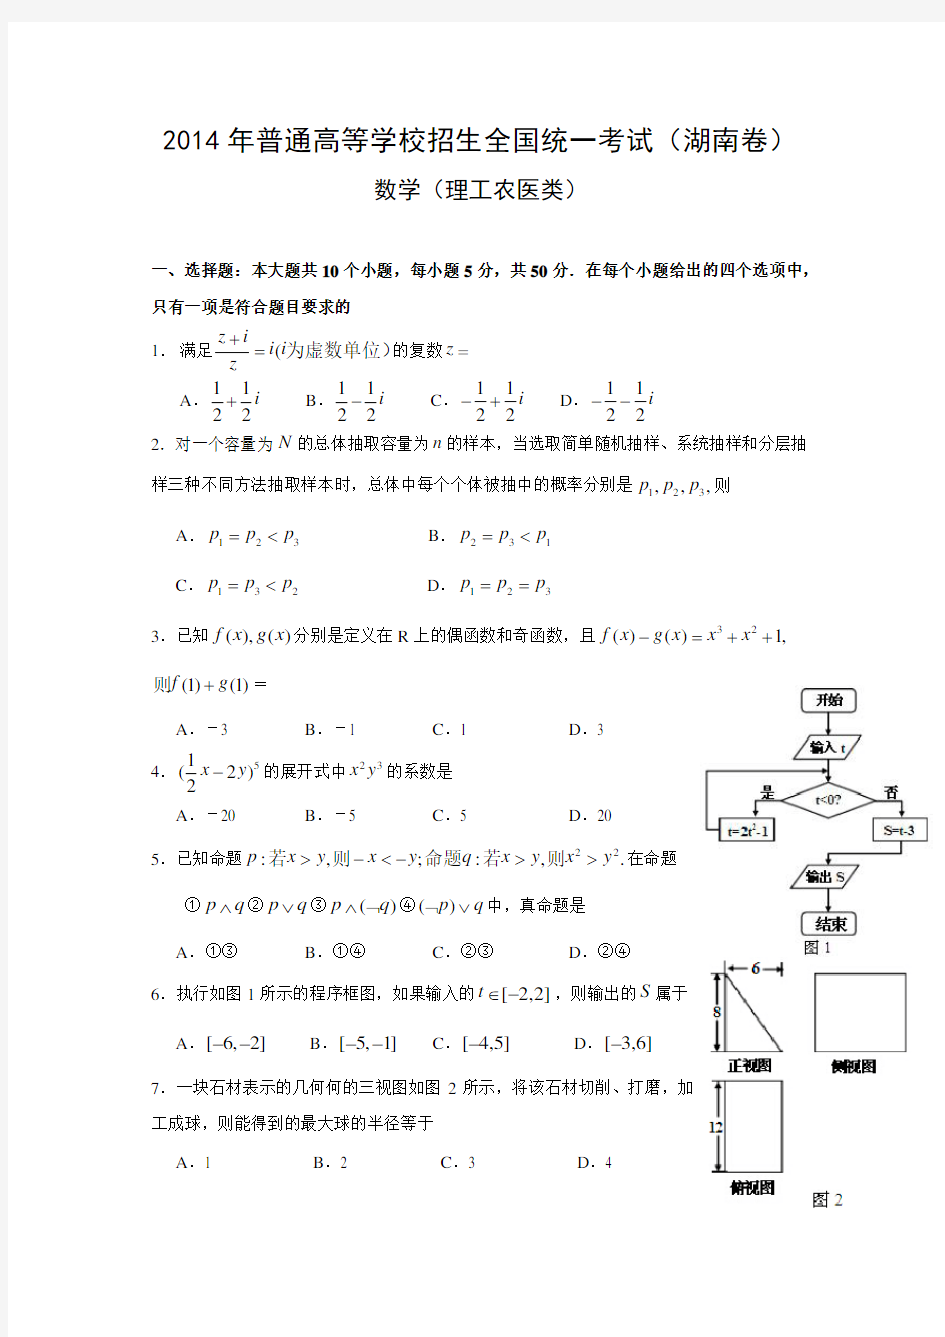 2014年高考理科数学试题(湖南卷)及参考答案